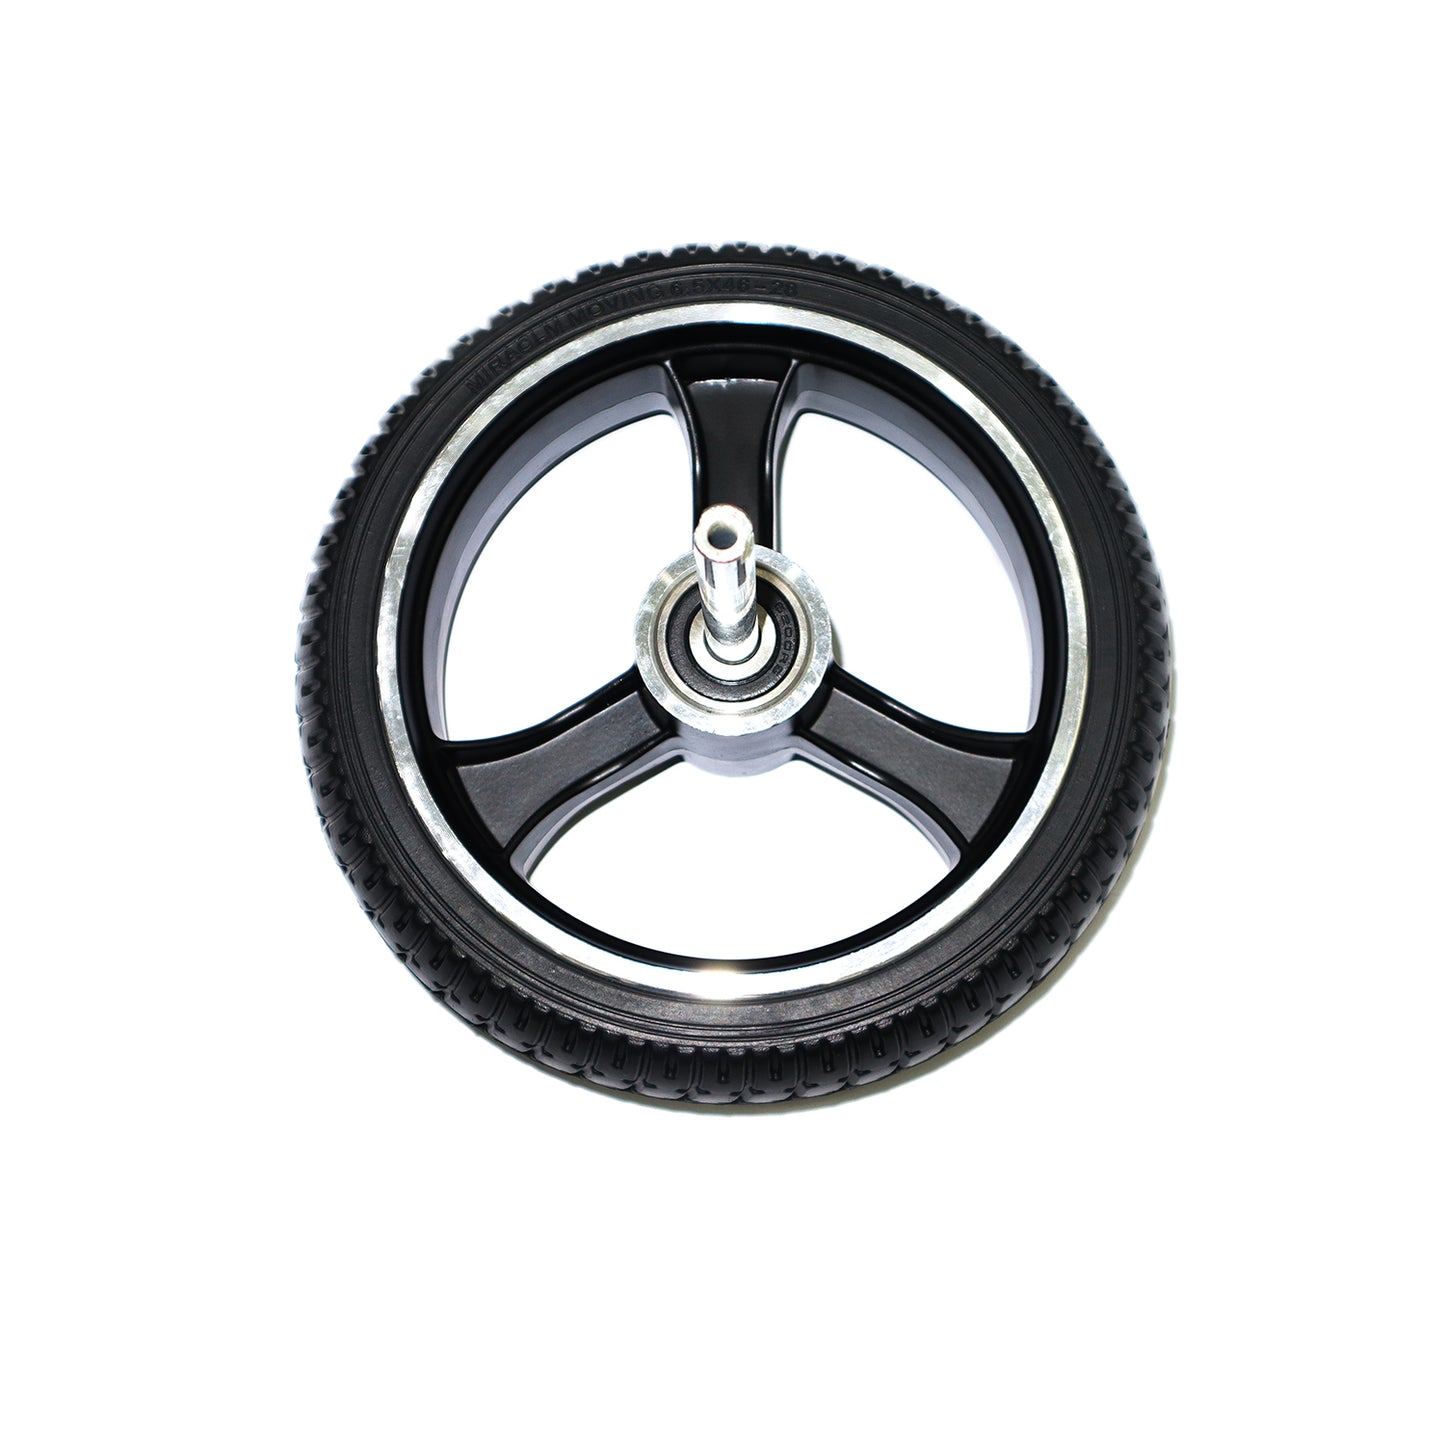 Hiboy S2 Lite Rear Wheel